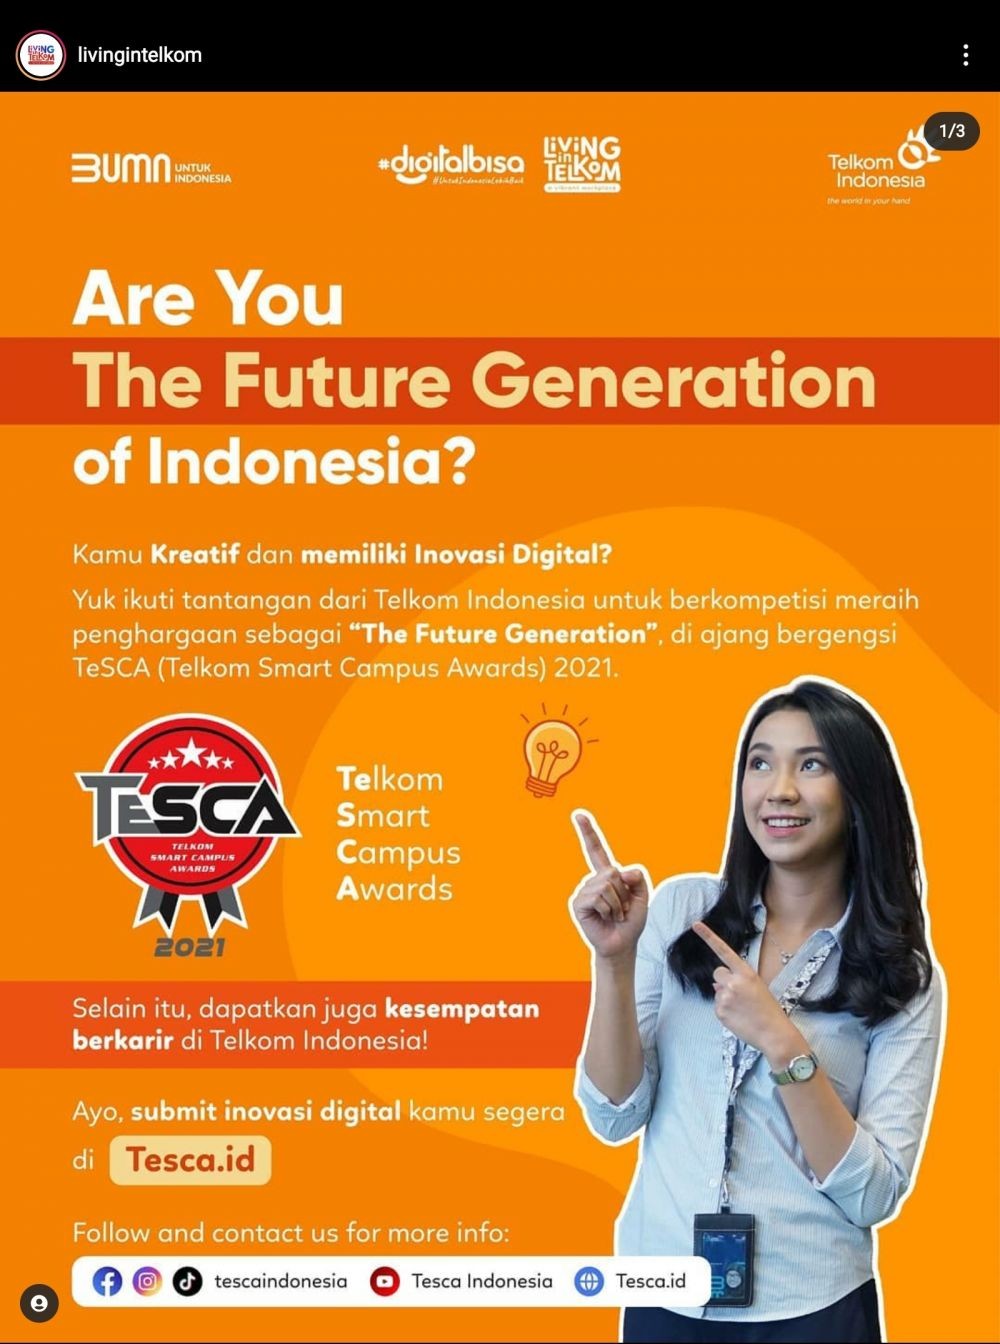 Telkom Butuh Talenta Muda Indonesia, Buru Kepoin Lowongannya Disini!